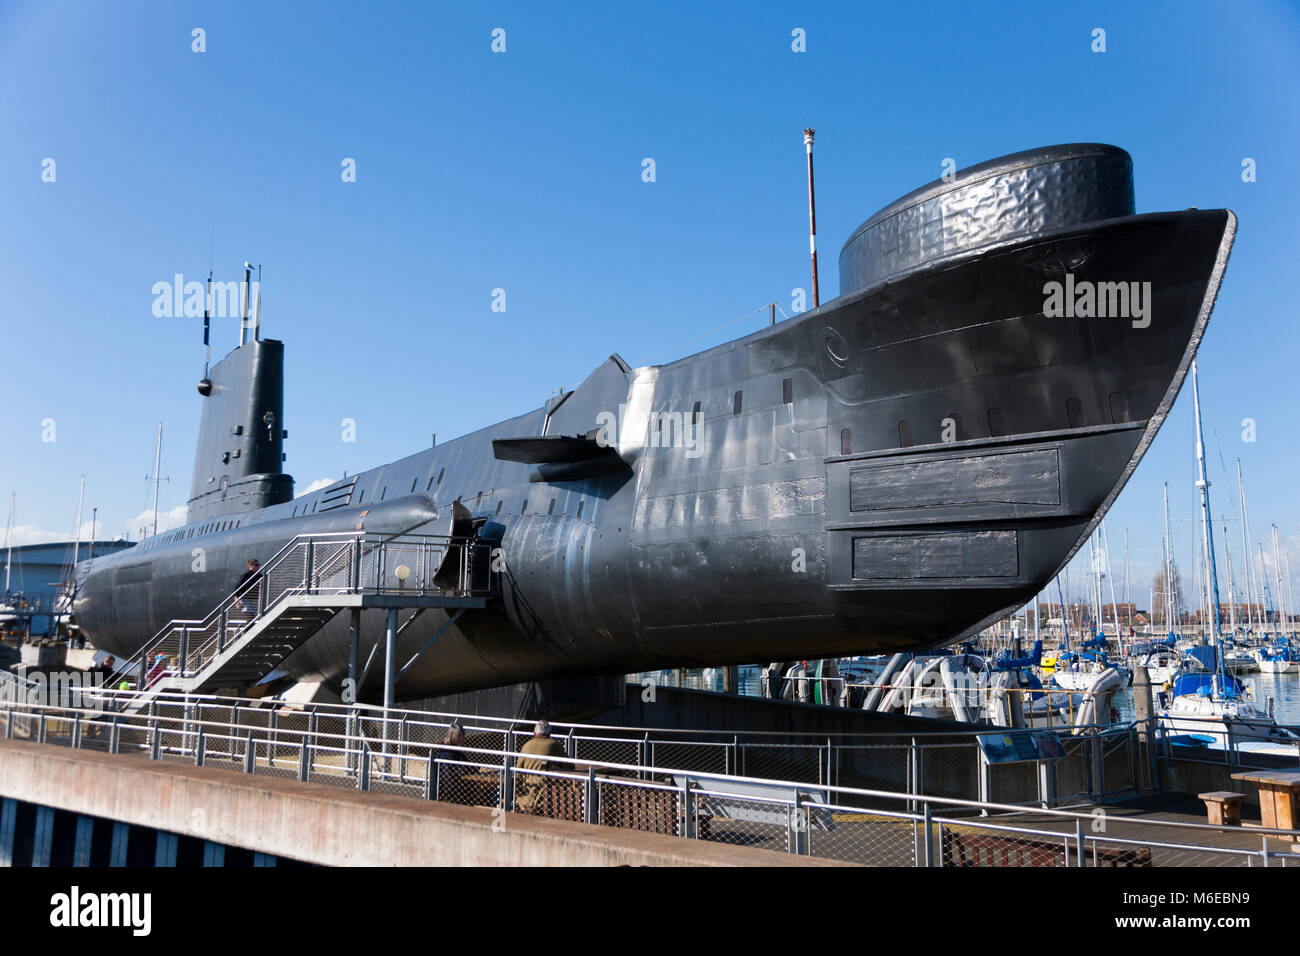 HMS Alliance, un Royal Navy A-classe, Amphion-classe o Acheronte-class sottomarino. Ora un memorial & museum nave presso il Royal Navy Submarine Museum, Gosport REGNO UNITO Foto Stock